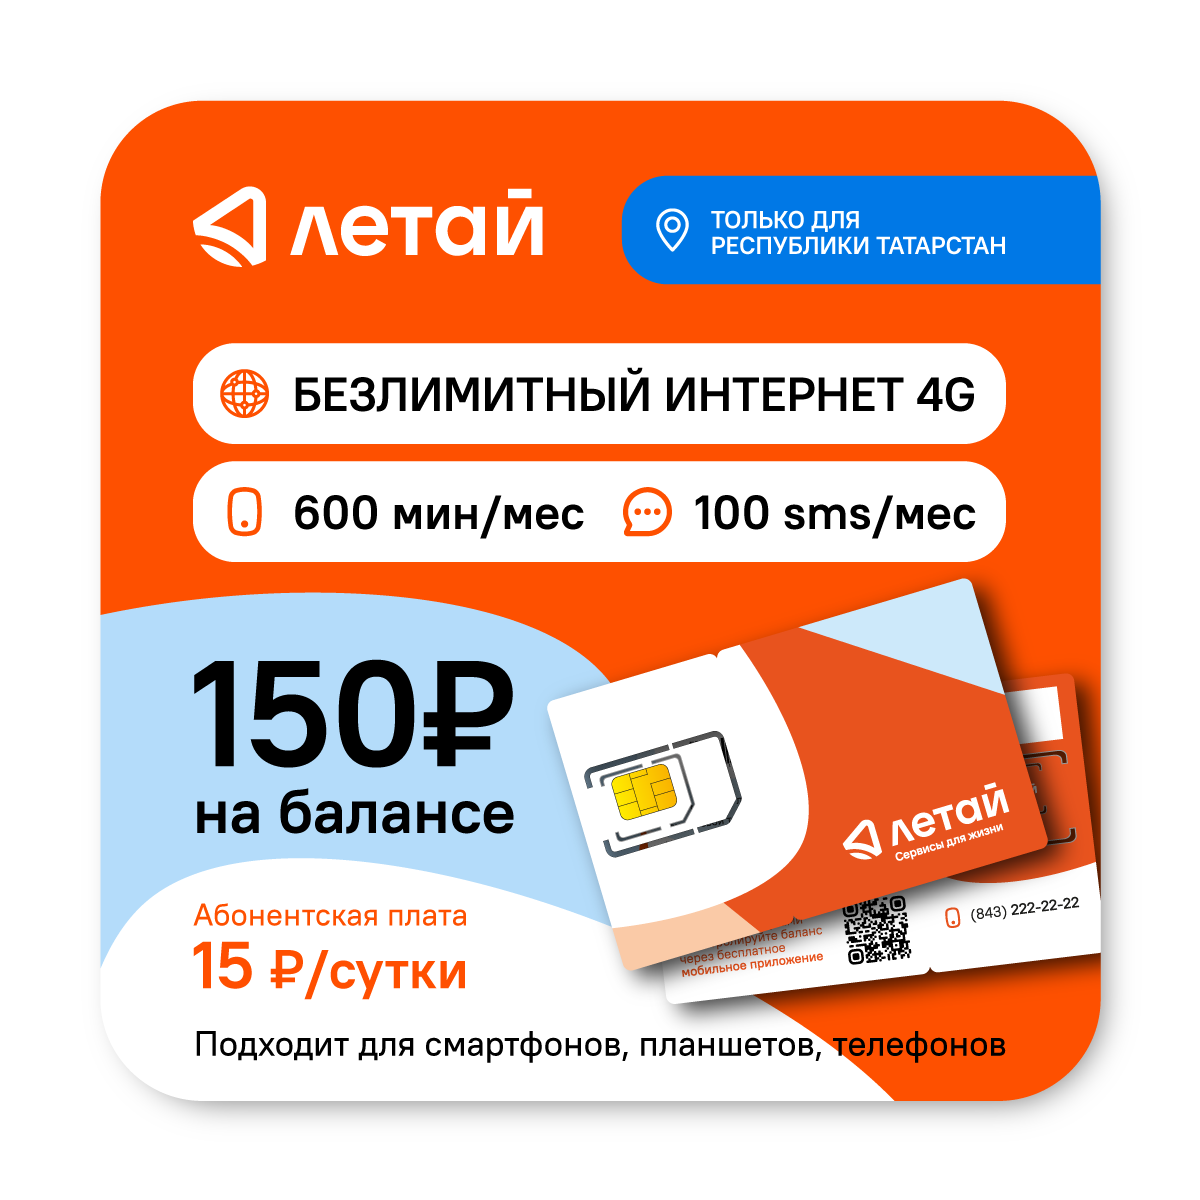 SIM-карта Летай Безлимитный интернет для Республики Татарстан за 15 руб/сутки на балансе – 150 руб.